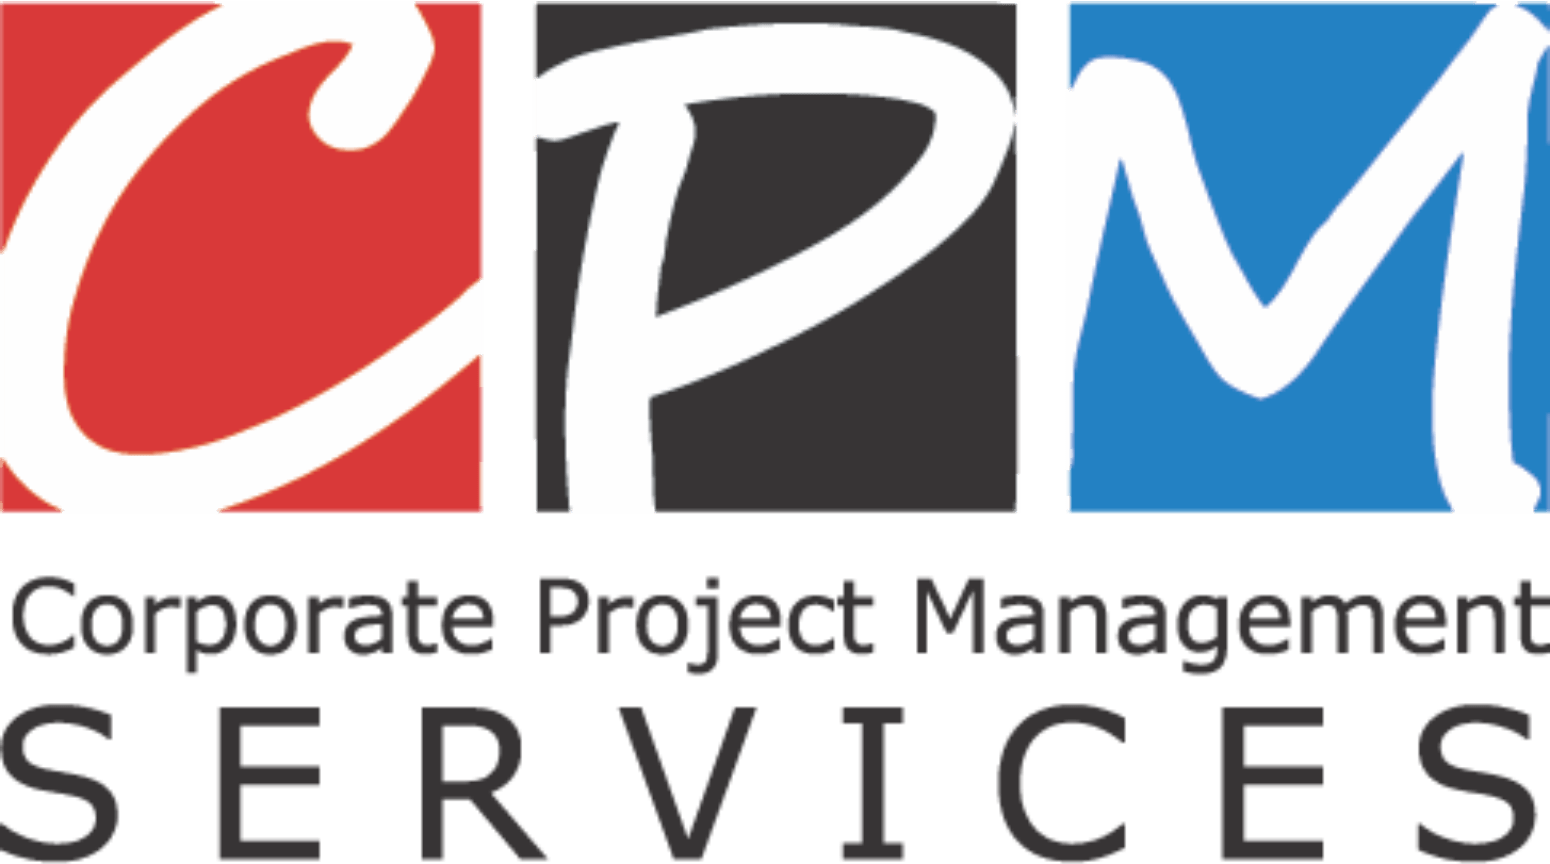 CPM Logo - CPM-logo-for-CPM-Services - Bizmag.co.za